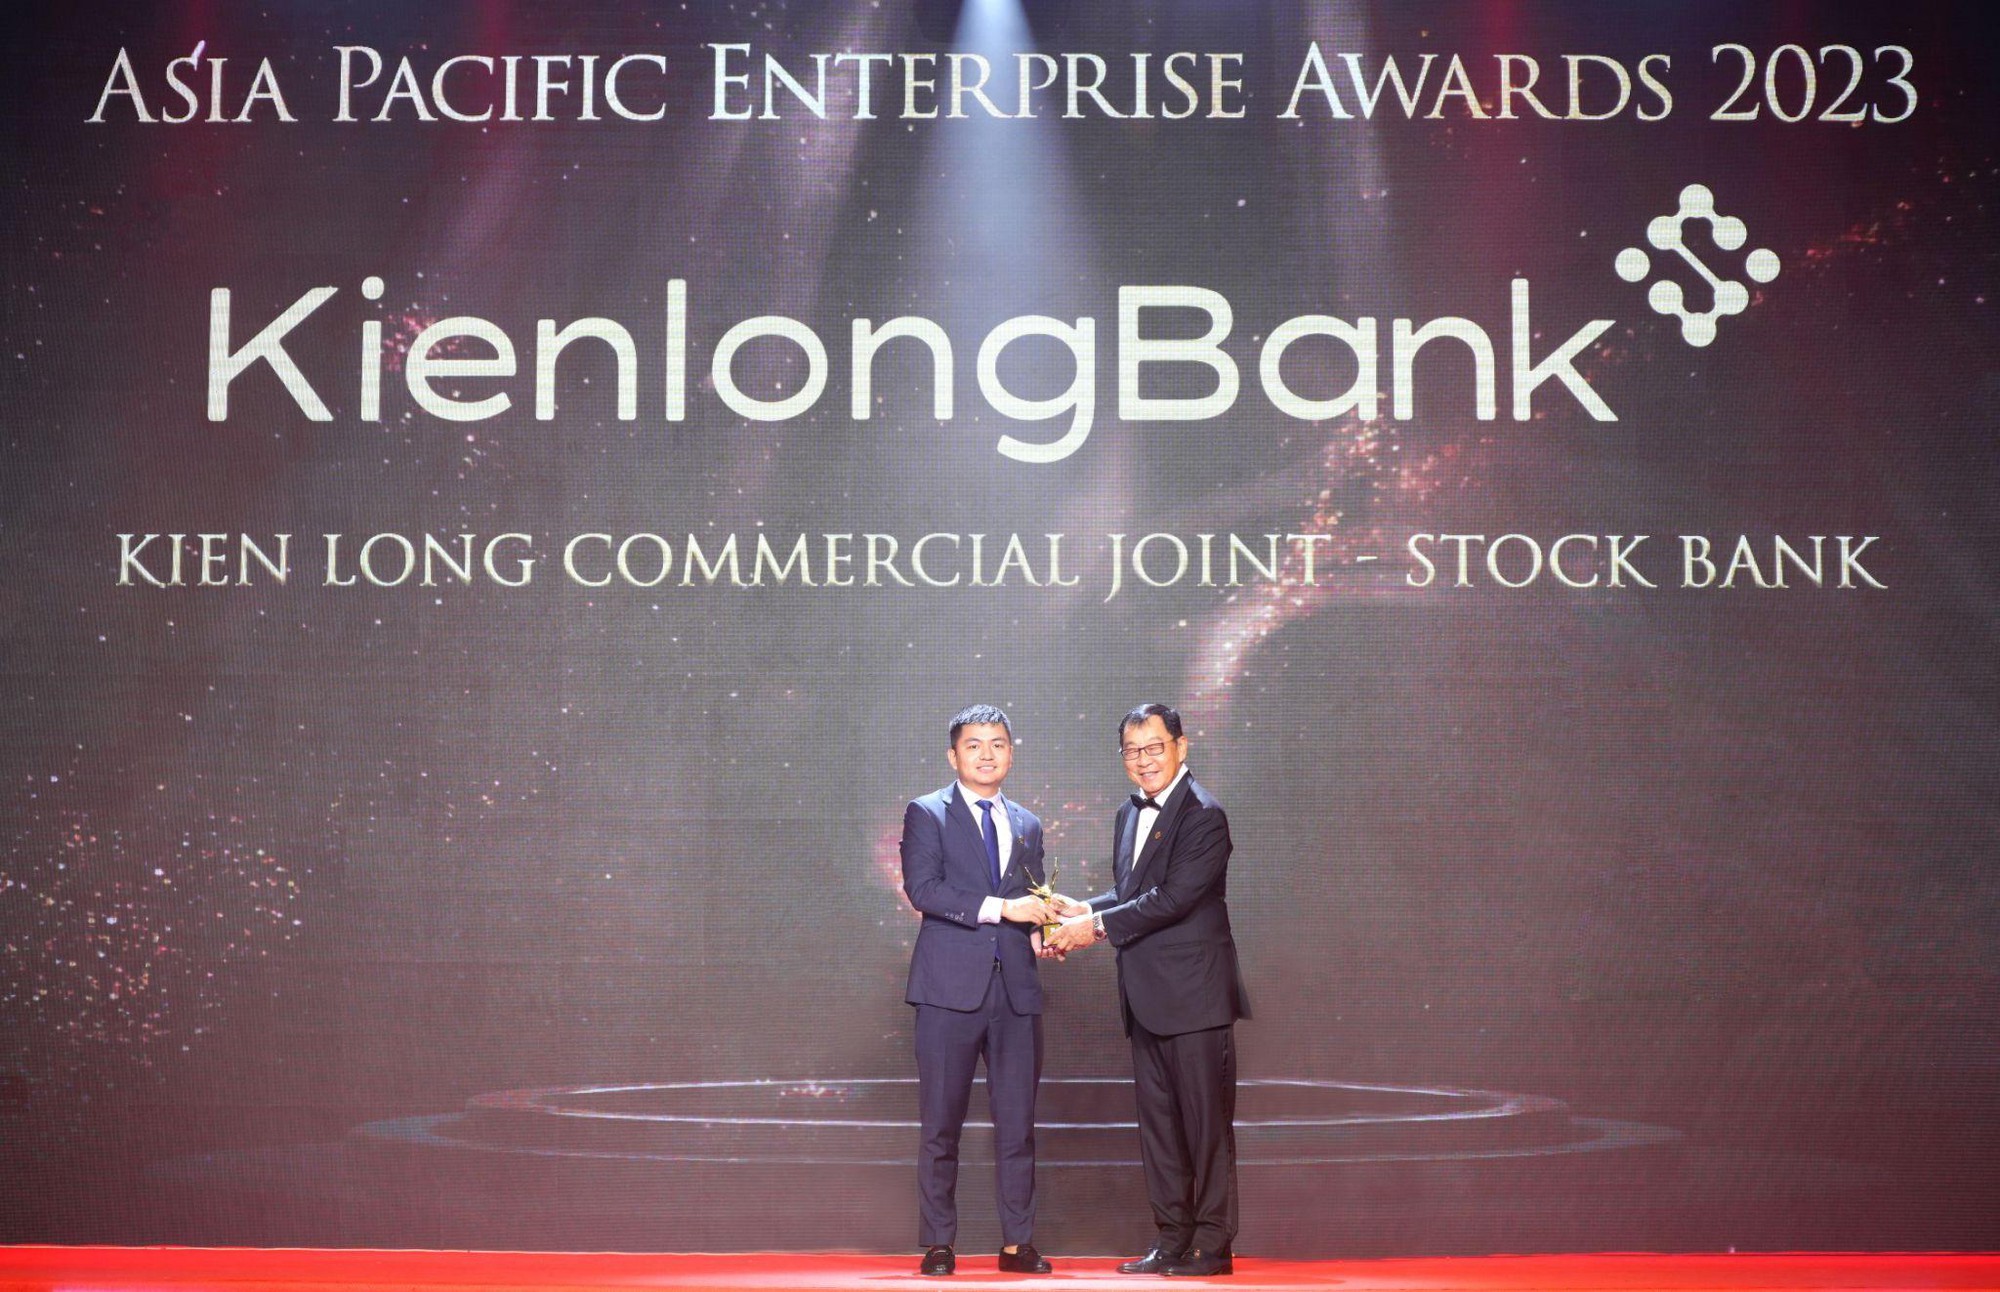 KienlongBank giành cú đúp giải thưởng tại Asia Pacific Enterprise Awards 2023 - Ảnh 1.